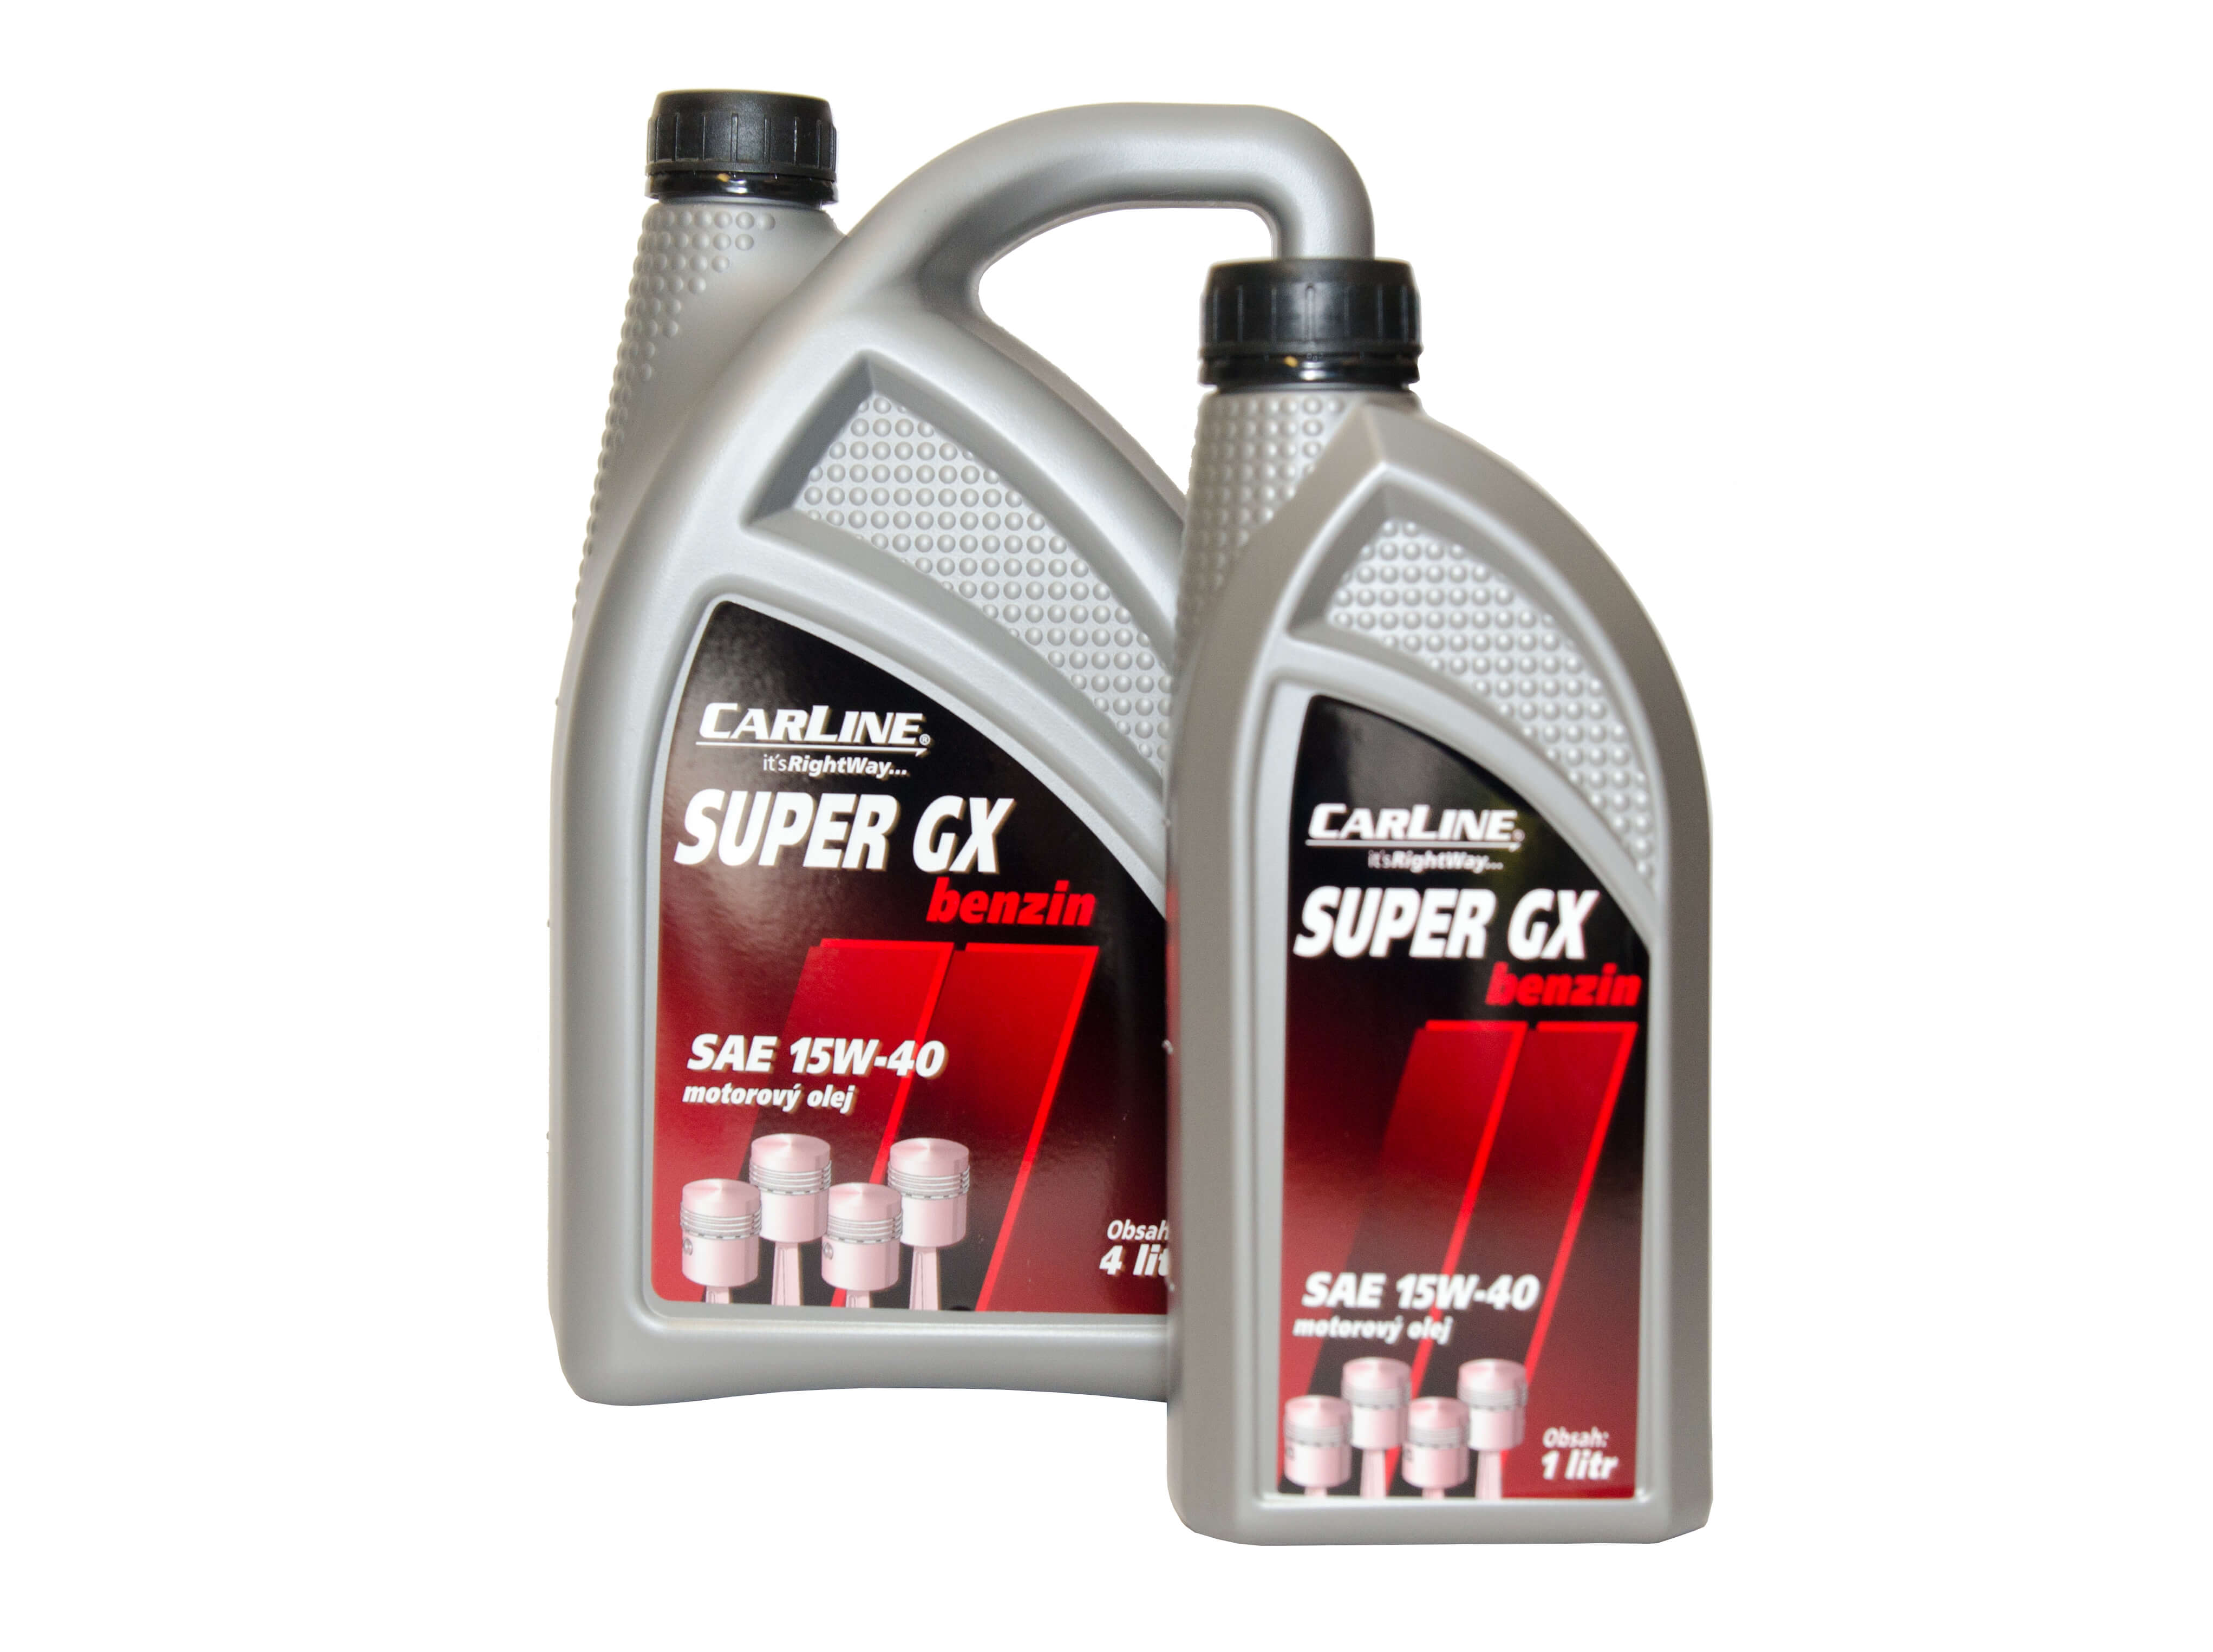 CARLINE® Super GX benzin 15W-40 Objem: 4 l